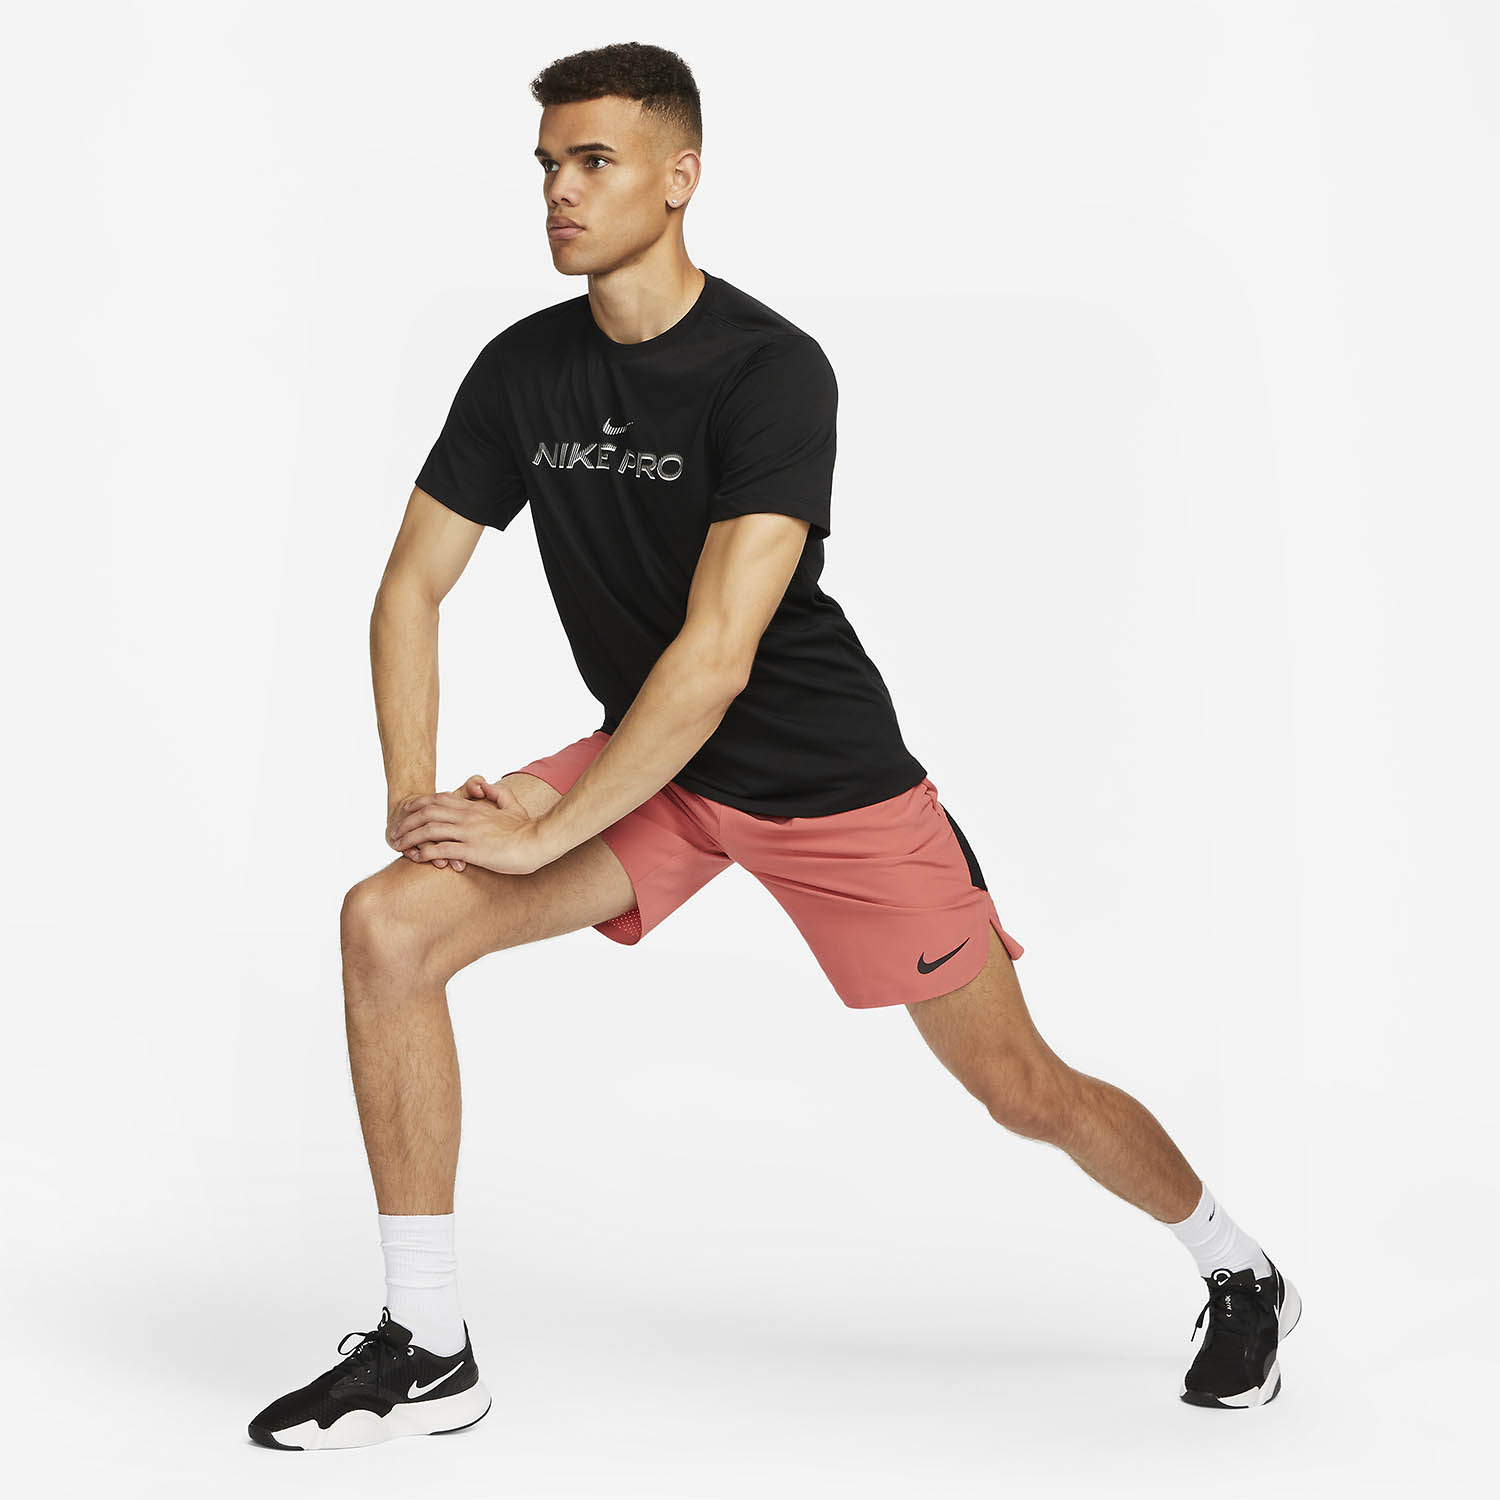 Nike Pro Fitness Maglietta - Black